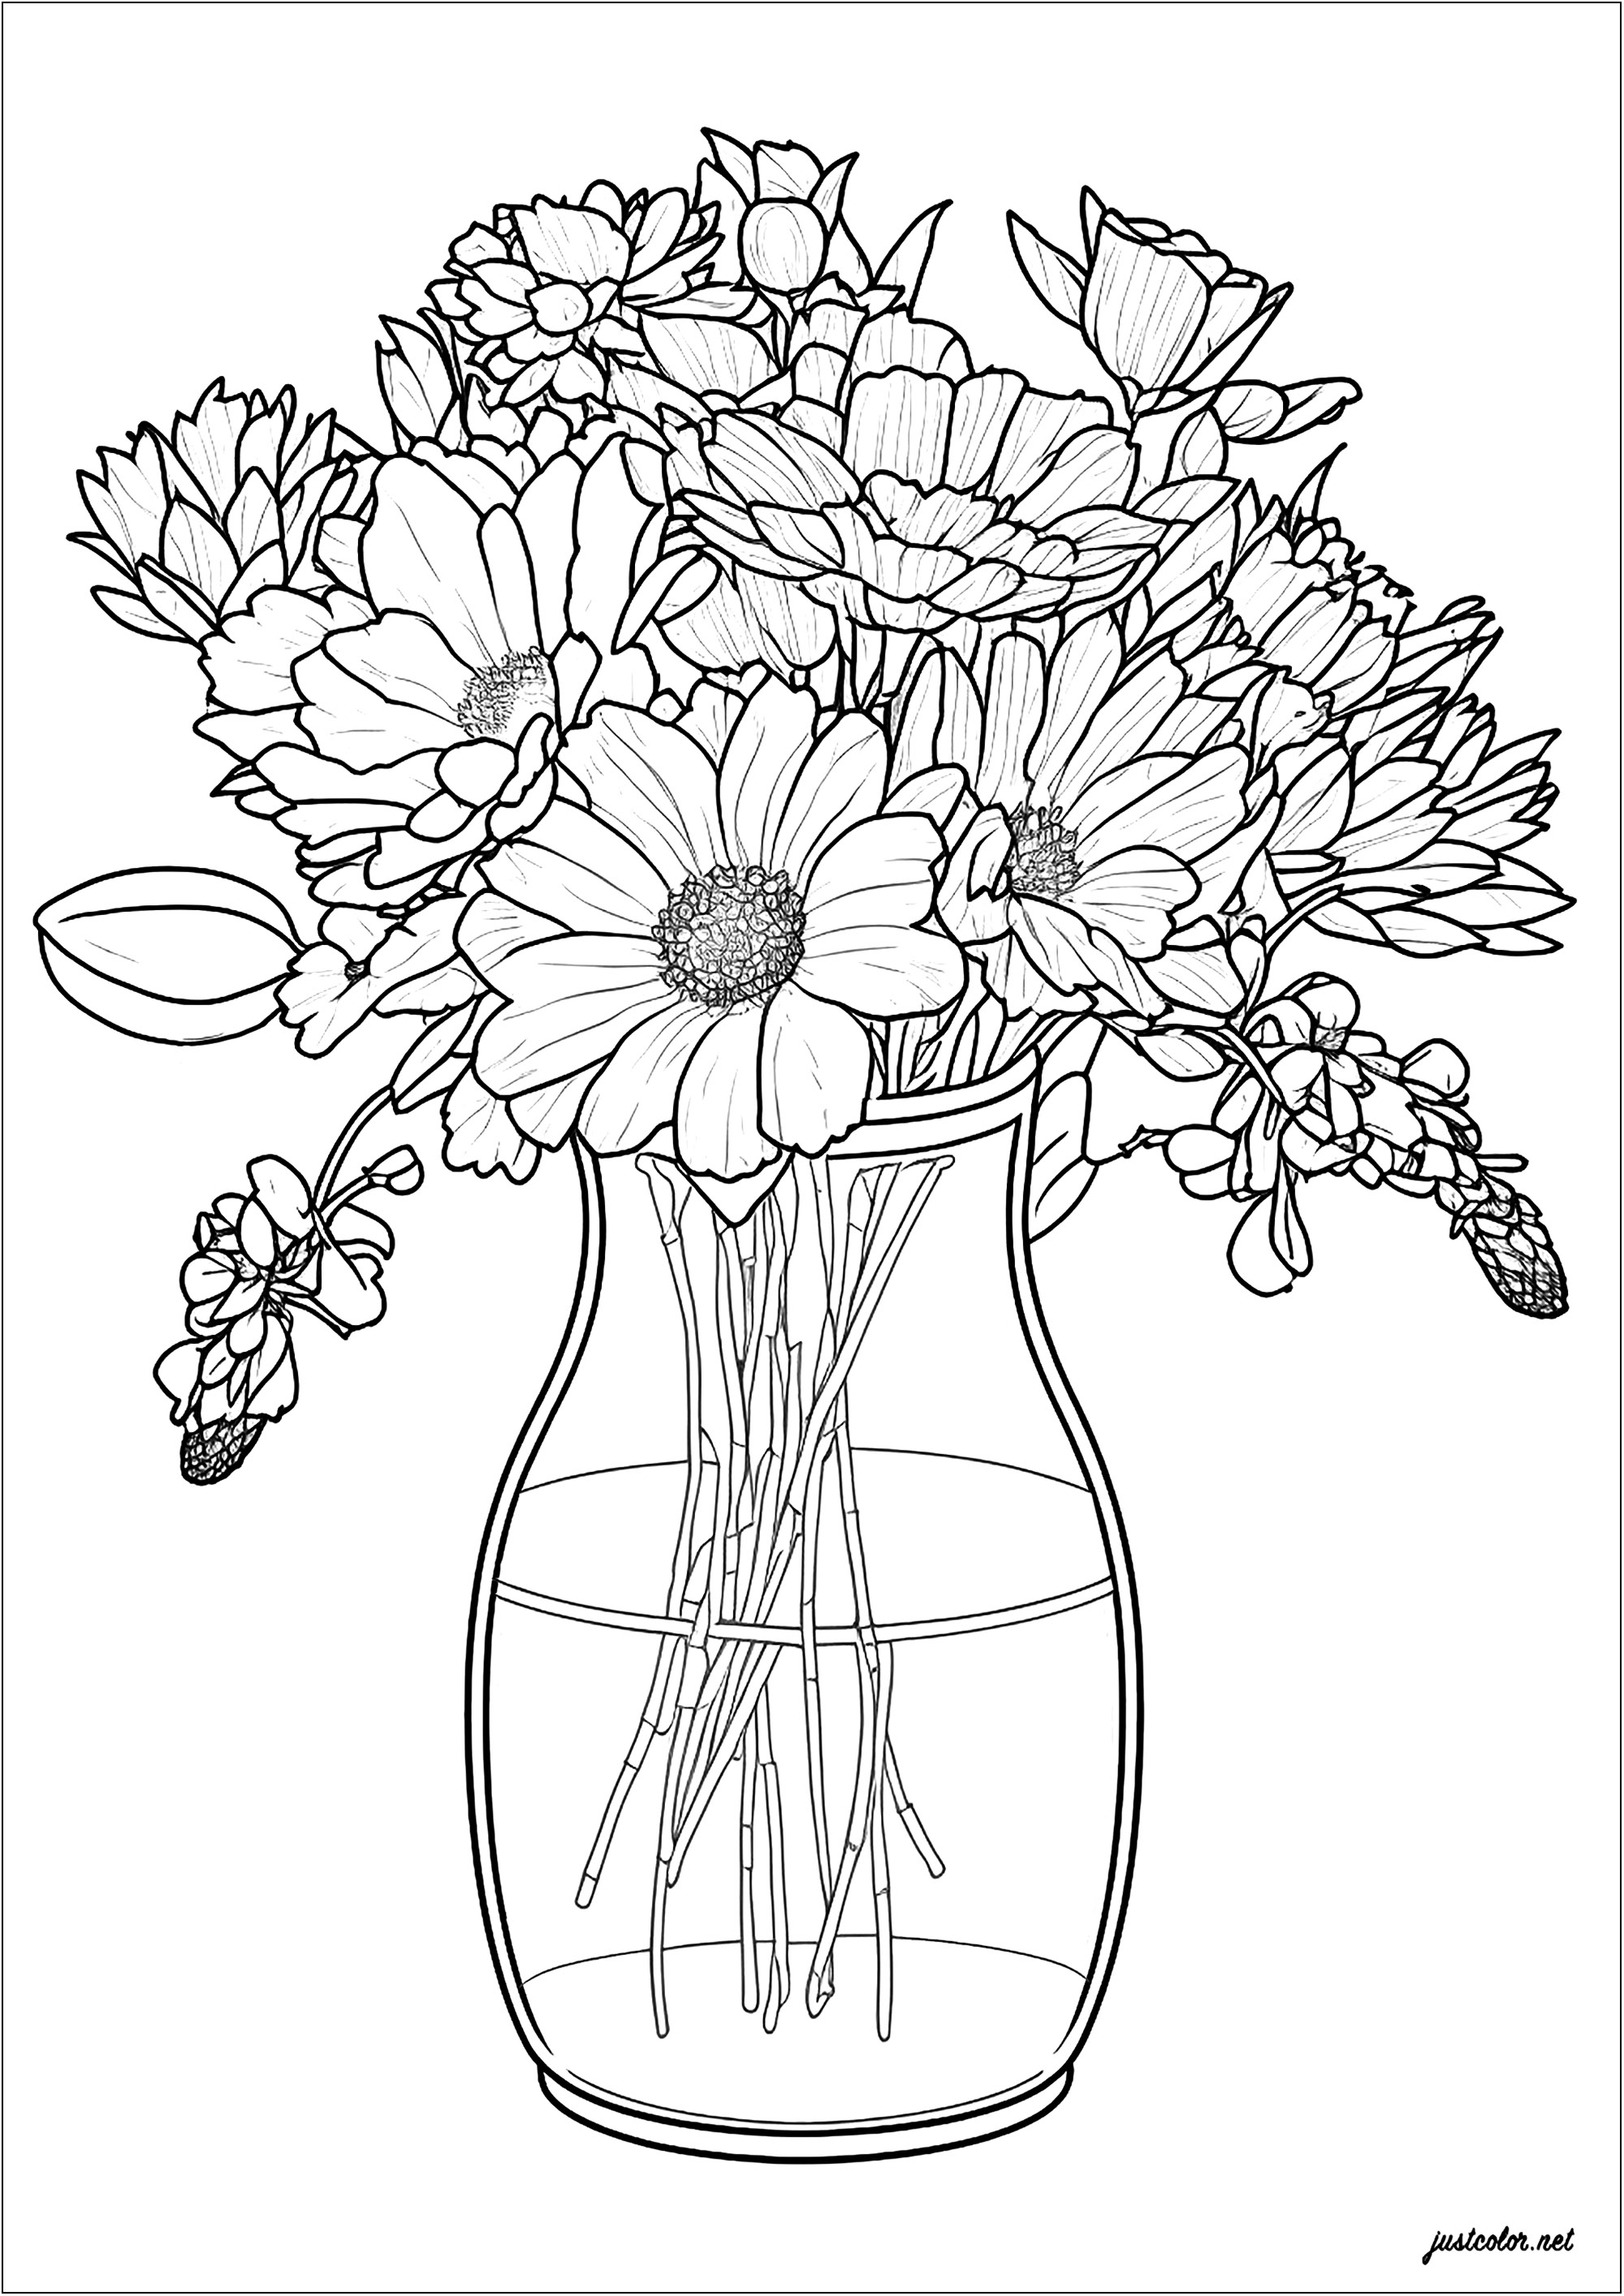 Vaso e fiori delicati. Un grazioso disegno dalle linee sottili, che raffigura bellissimi fiori elegantemente disposti in un vaso di vetro. Un modo eccellente per trascorrere un momento piacevole creando qualcosa di unico e bello.